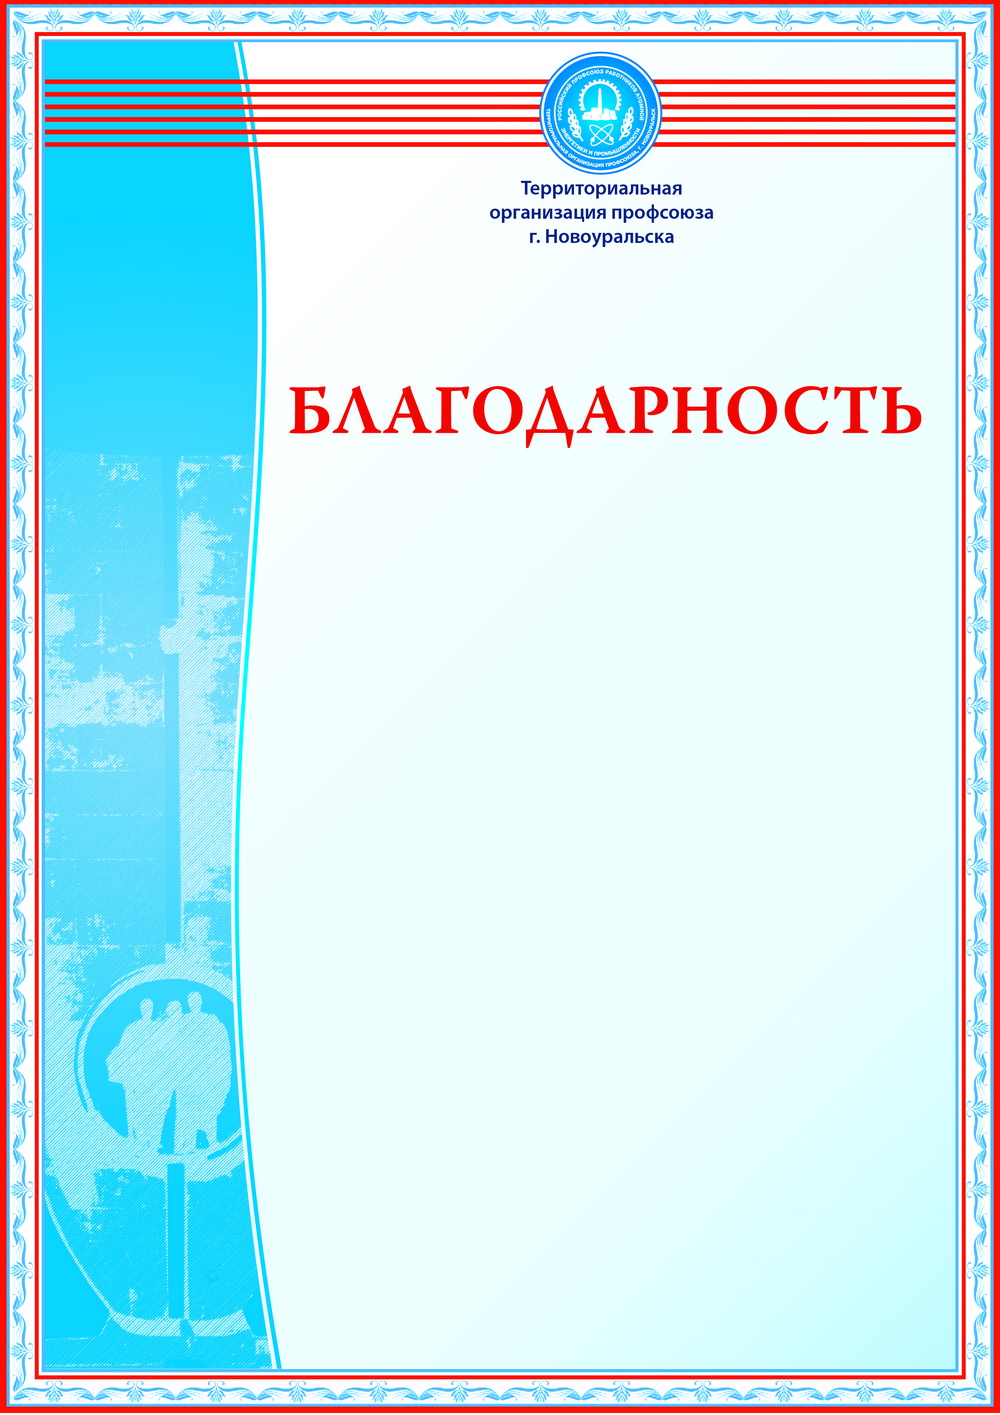 Благодарность Территориального комитета профсоюза г. Новоуральска